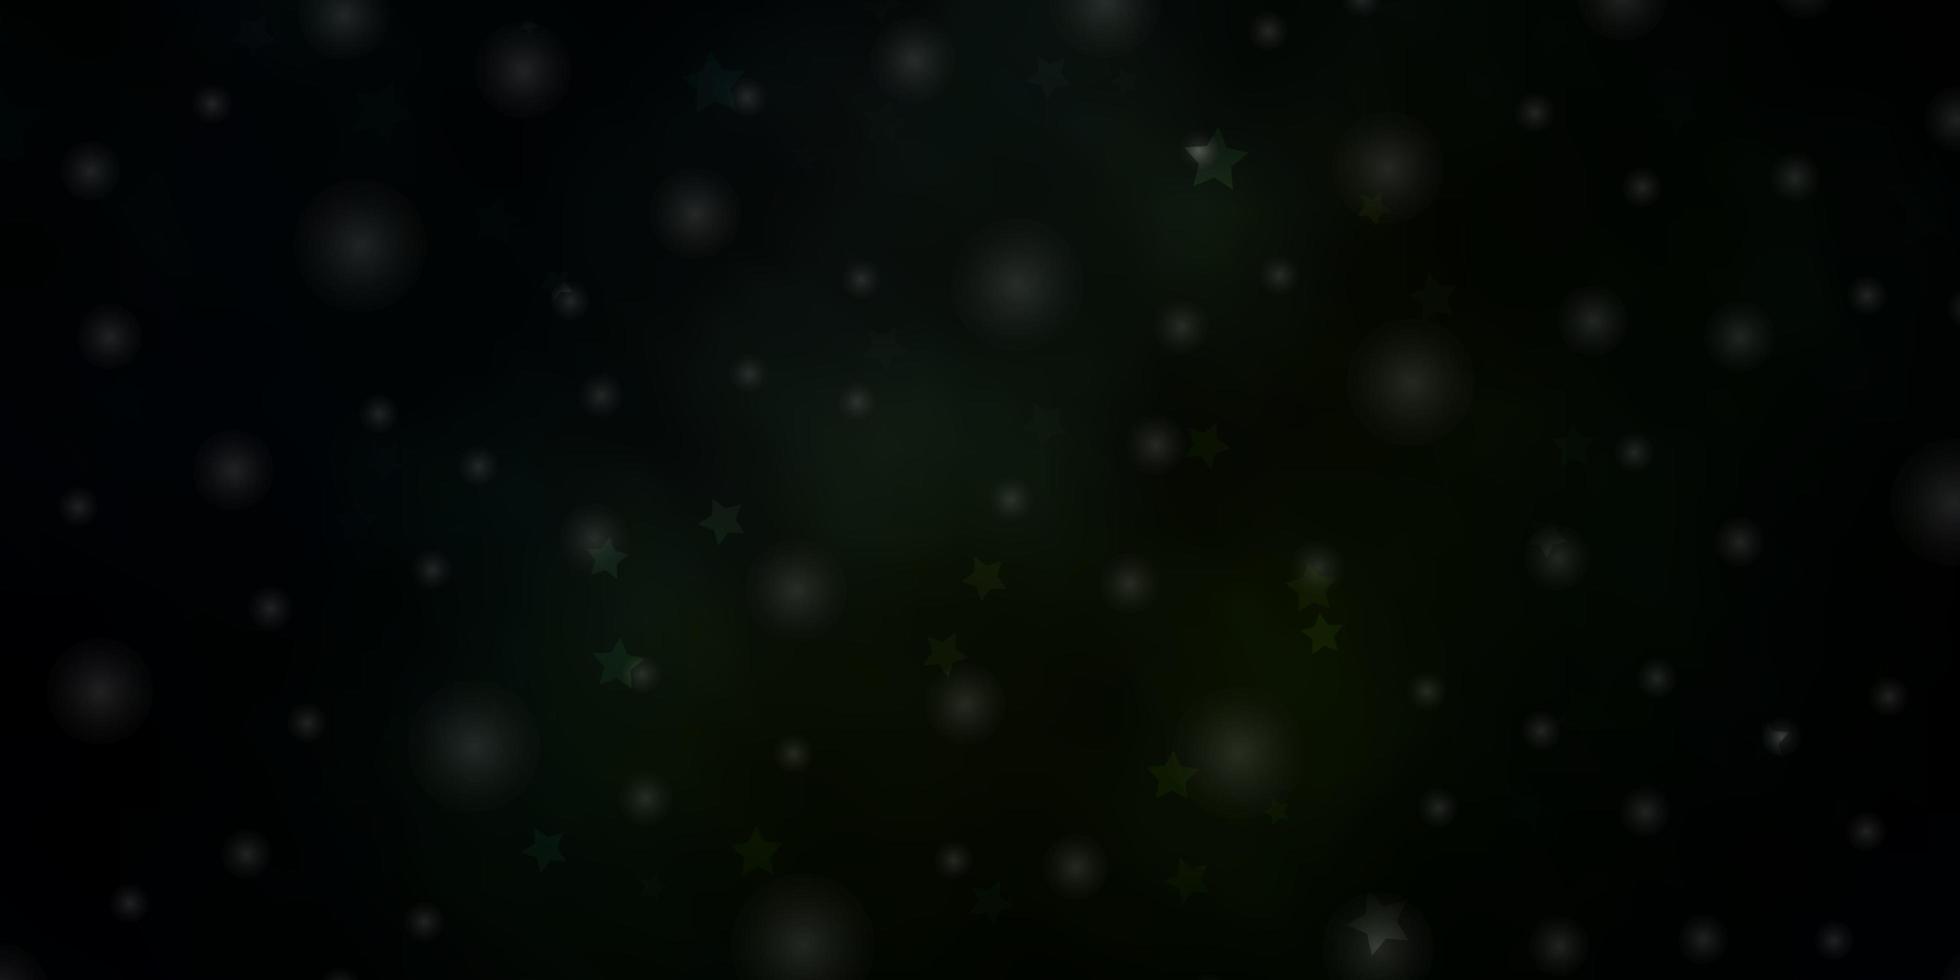 modello vettoriale verde scuro con illustrazione colorata di stelle al neon in stile astratto con motivo a stelle sfumate per libretti pubblicitari di capodanno